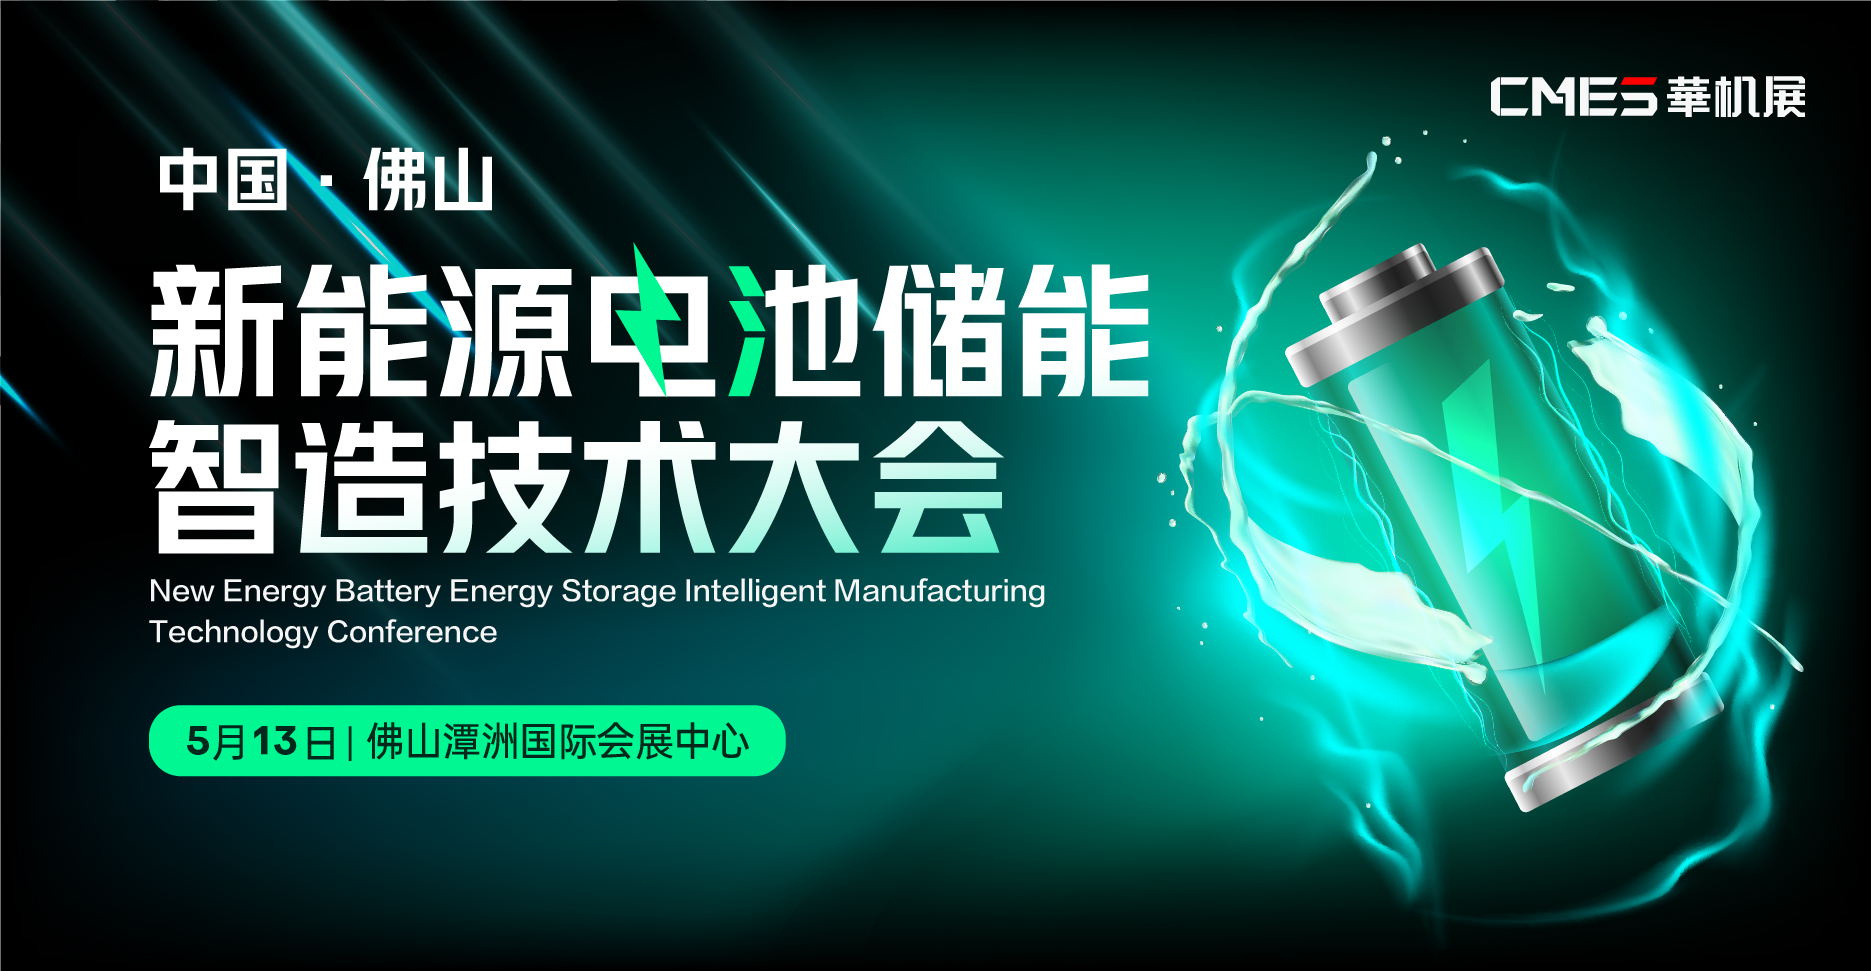 中国·佛山新能源电池储能智造技术大会